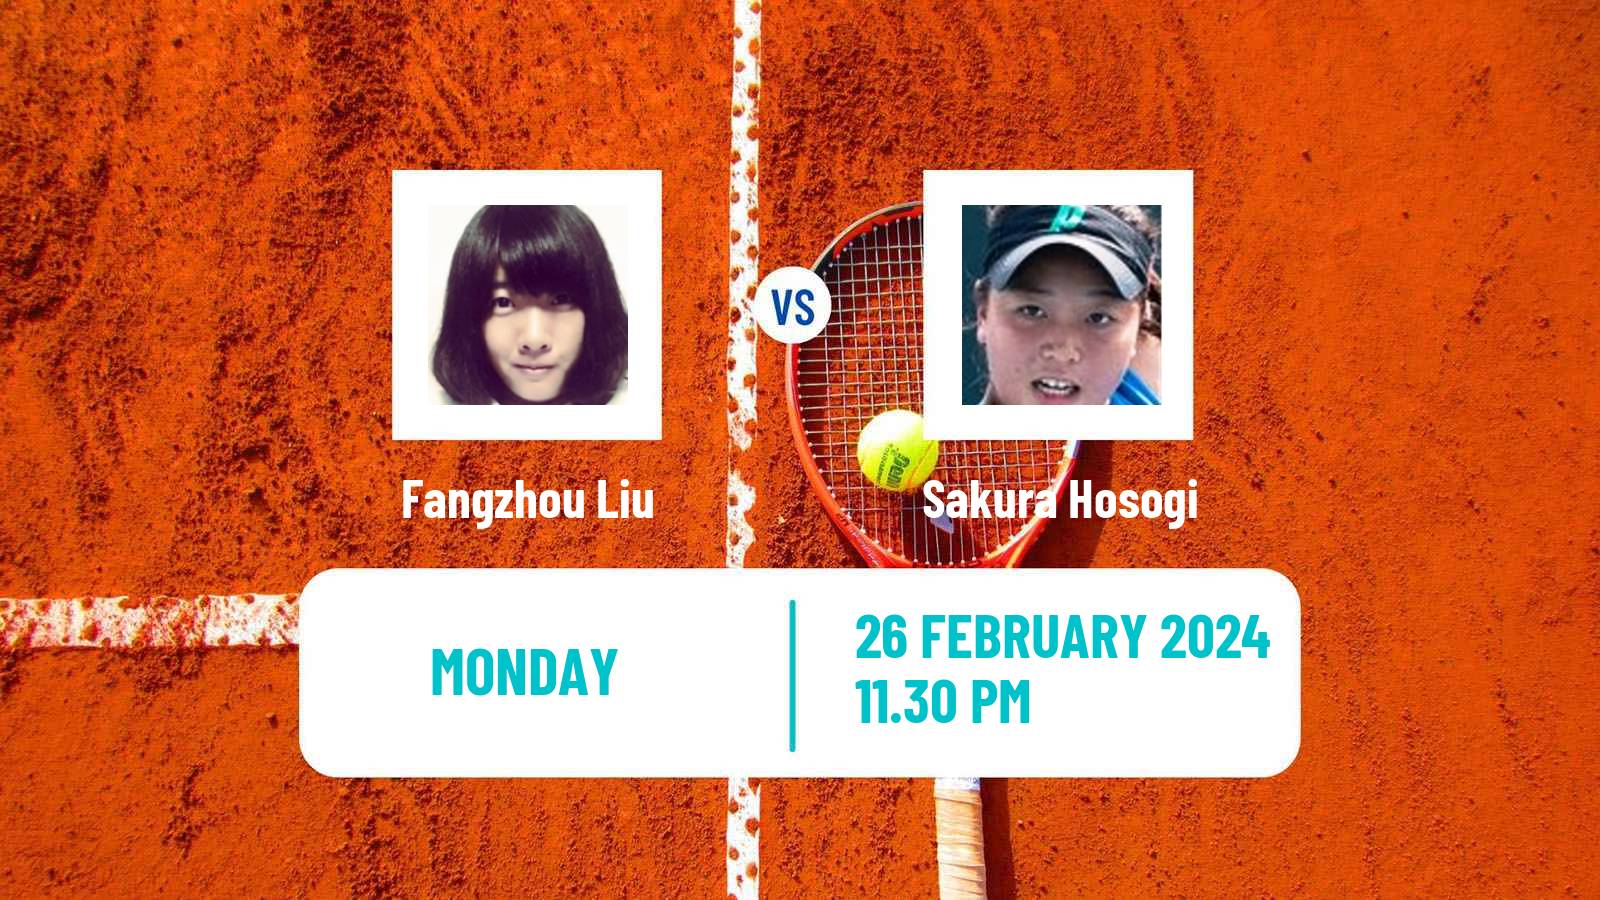 Tennis ITF W35 Traralgon 2 Women Fangzhou Liu - Sakura Hosogi